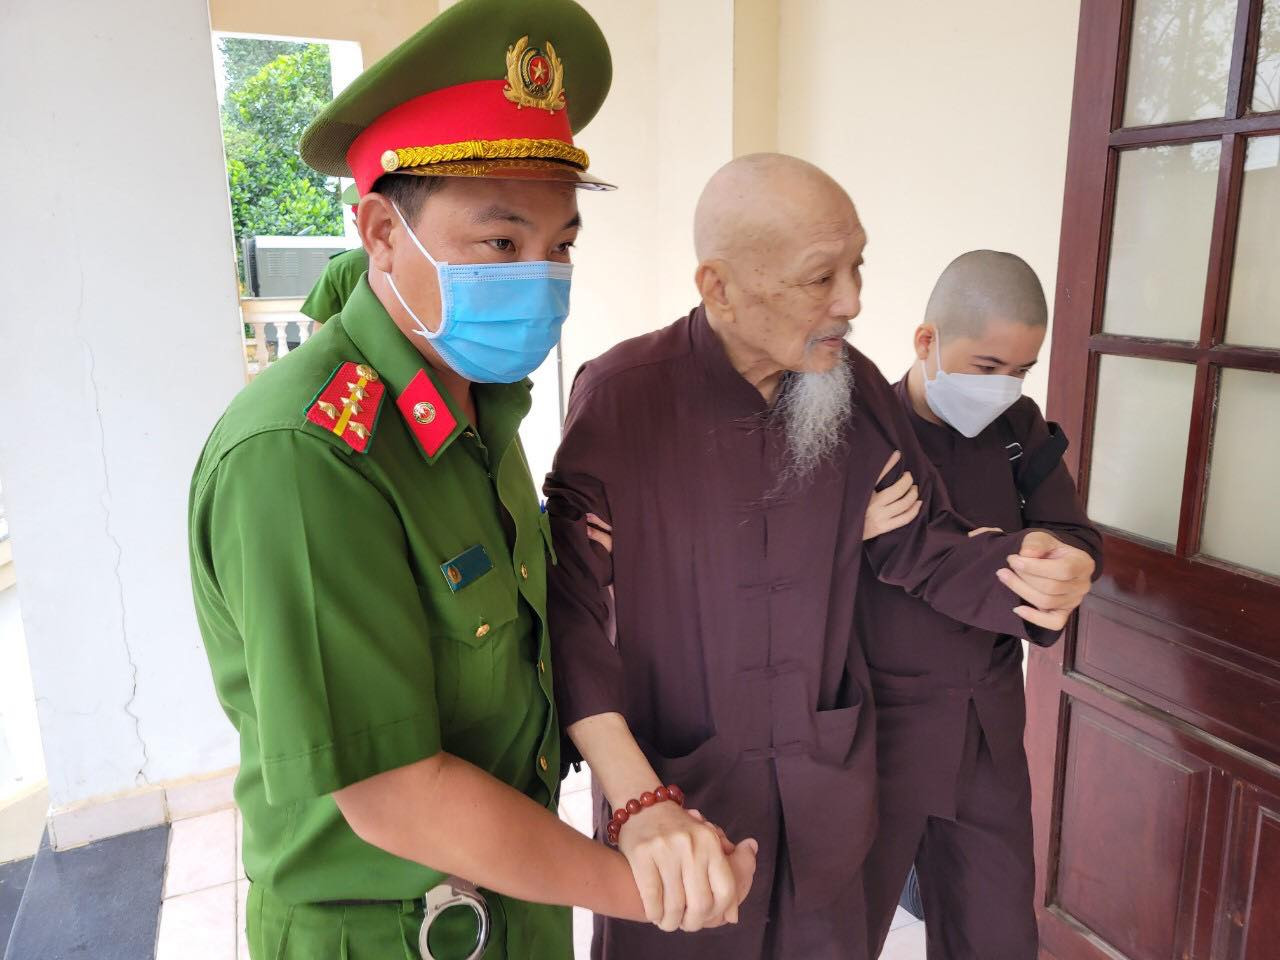 An ninh nghiêm ngặt phiên xử ông Lê Tùng Vân và đồng phạm vụ 'Tịnh thất Bồng Lai'